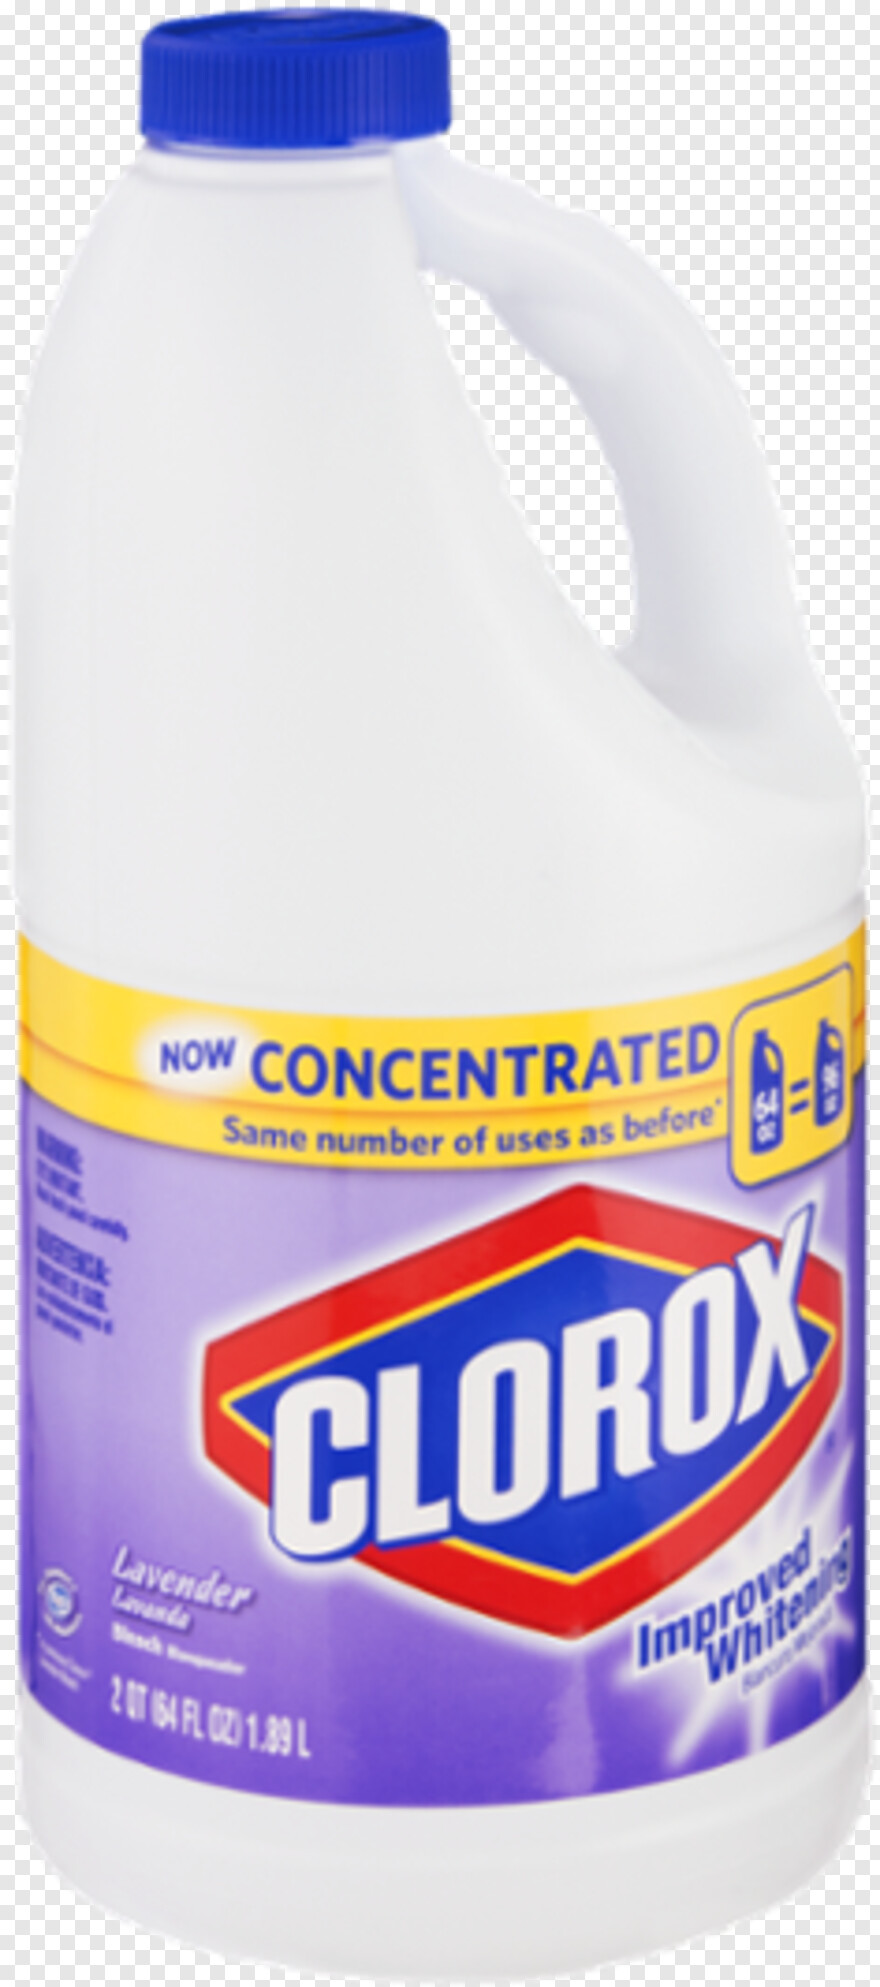 clorox-bleach # 326532